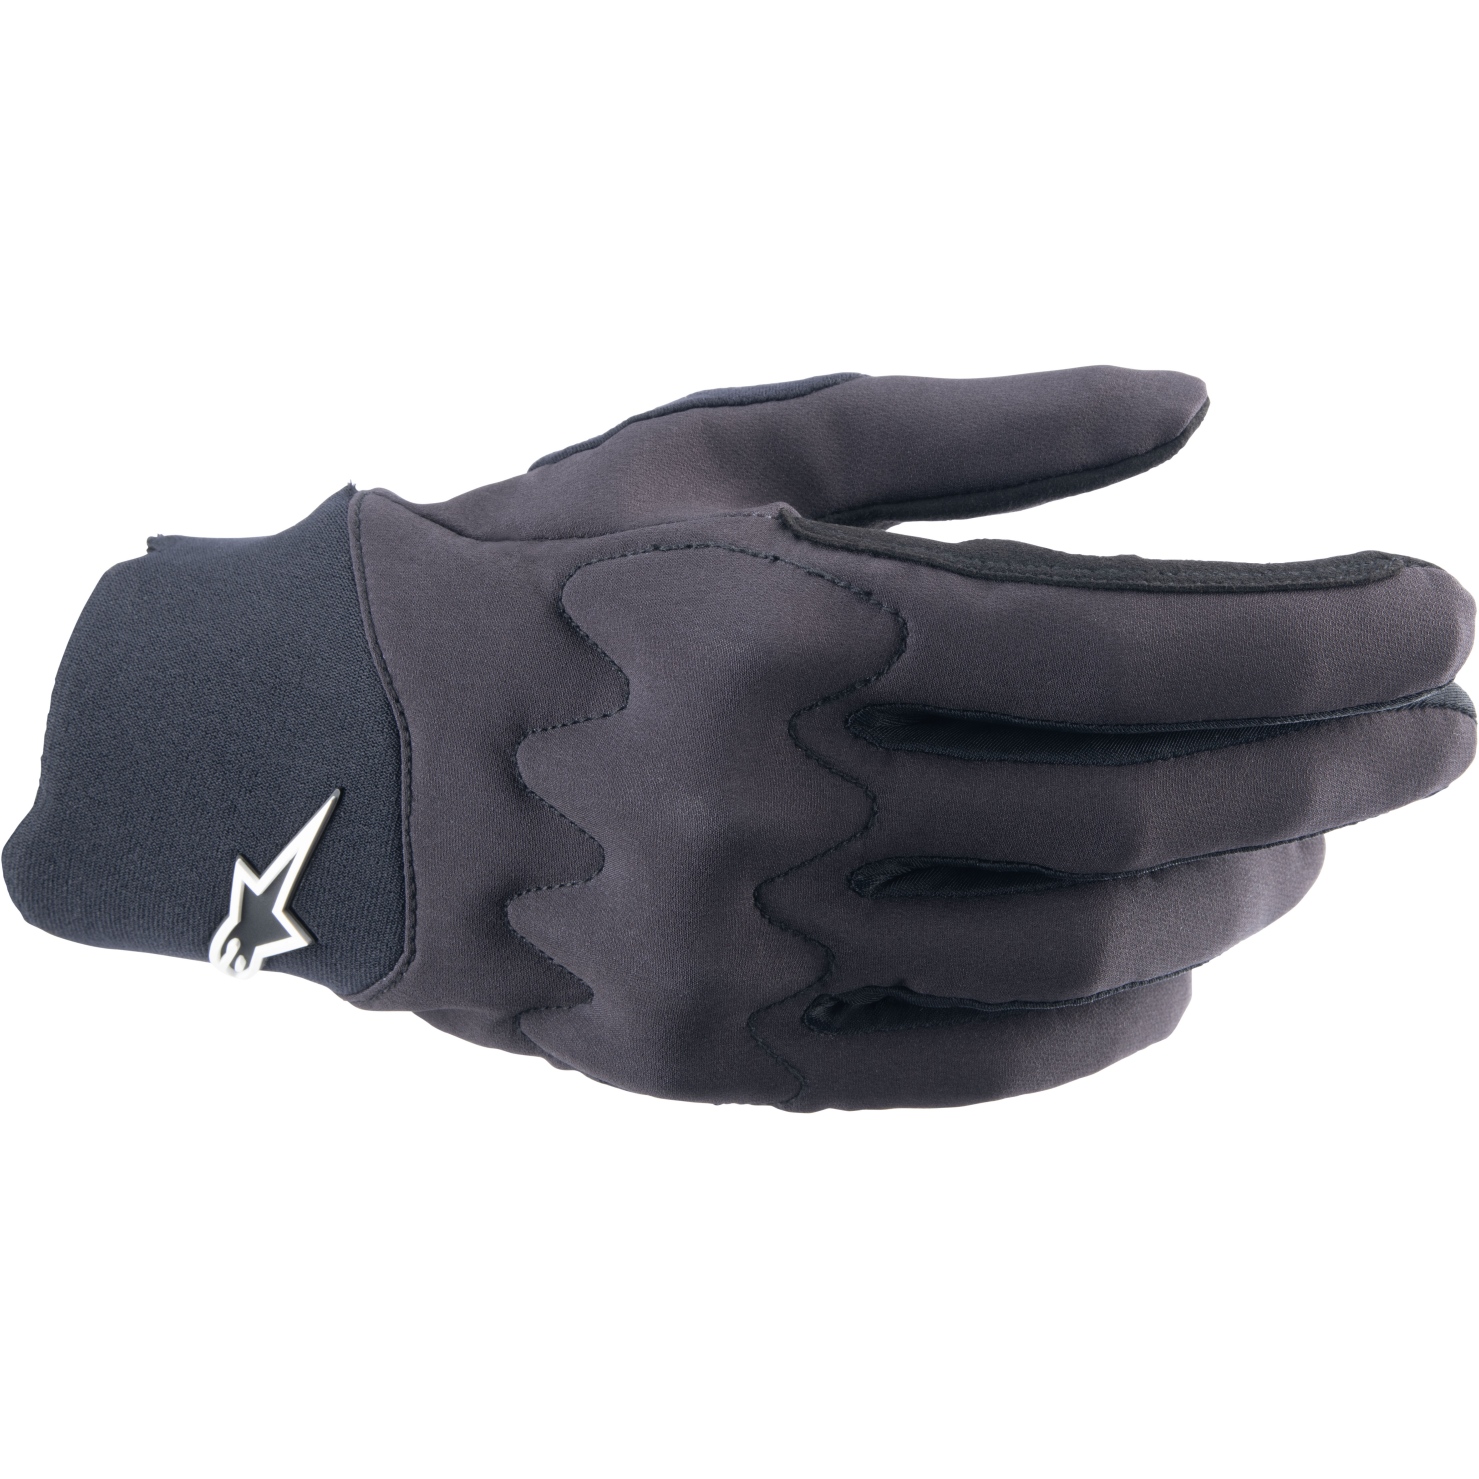 Produktbild von Alpinestars A-Supra Shield Handschuhe - schwarz